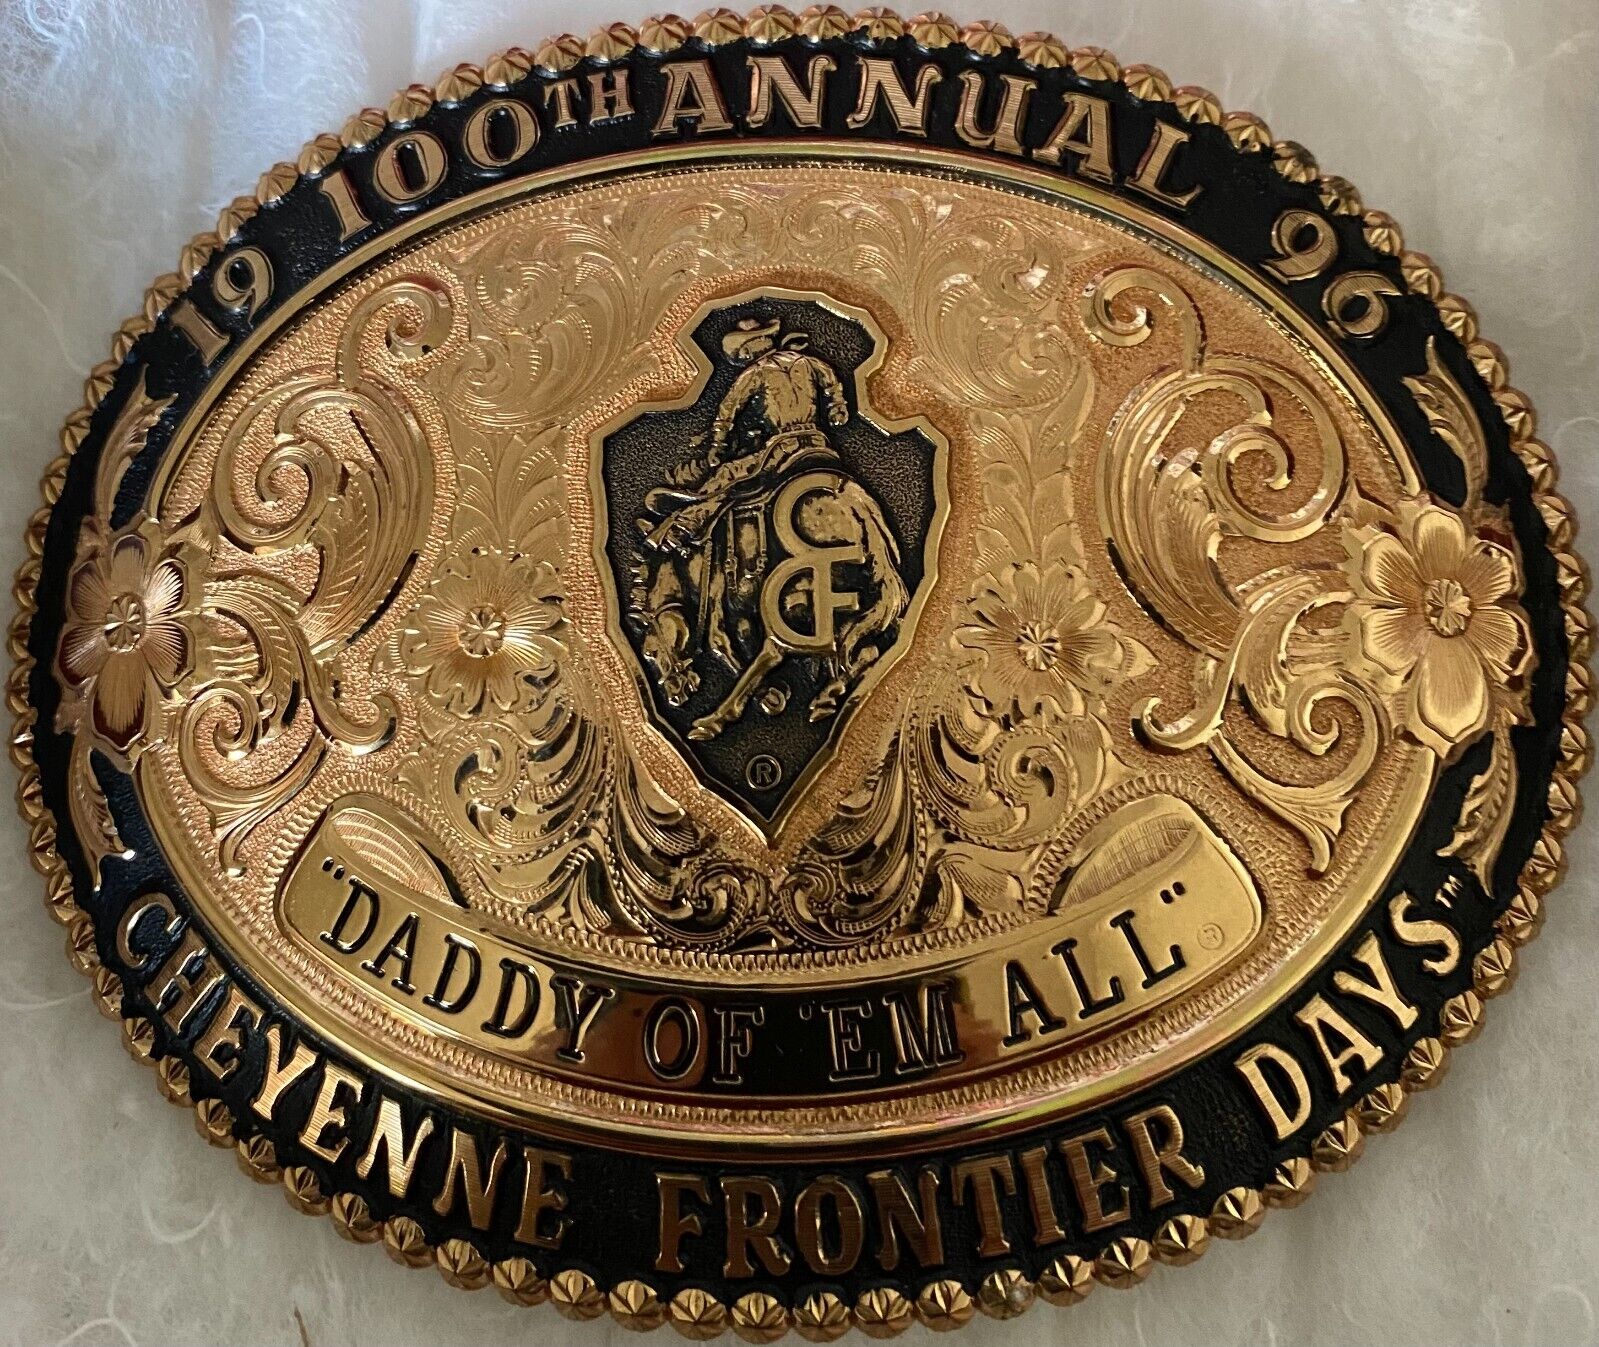 1996 100th Anniversary Cheyenne Frontier Days Gist Belt Buckle